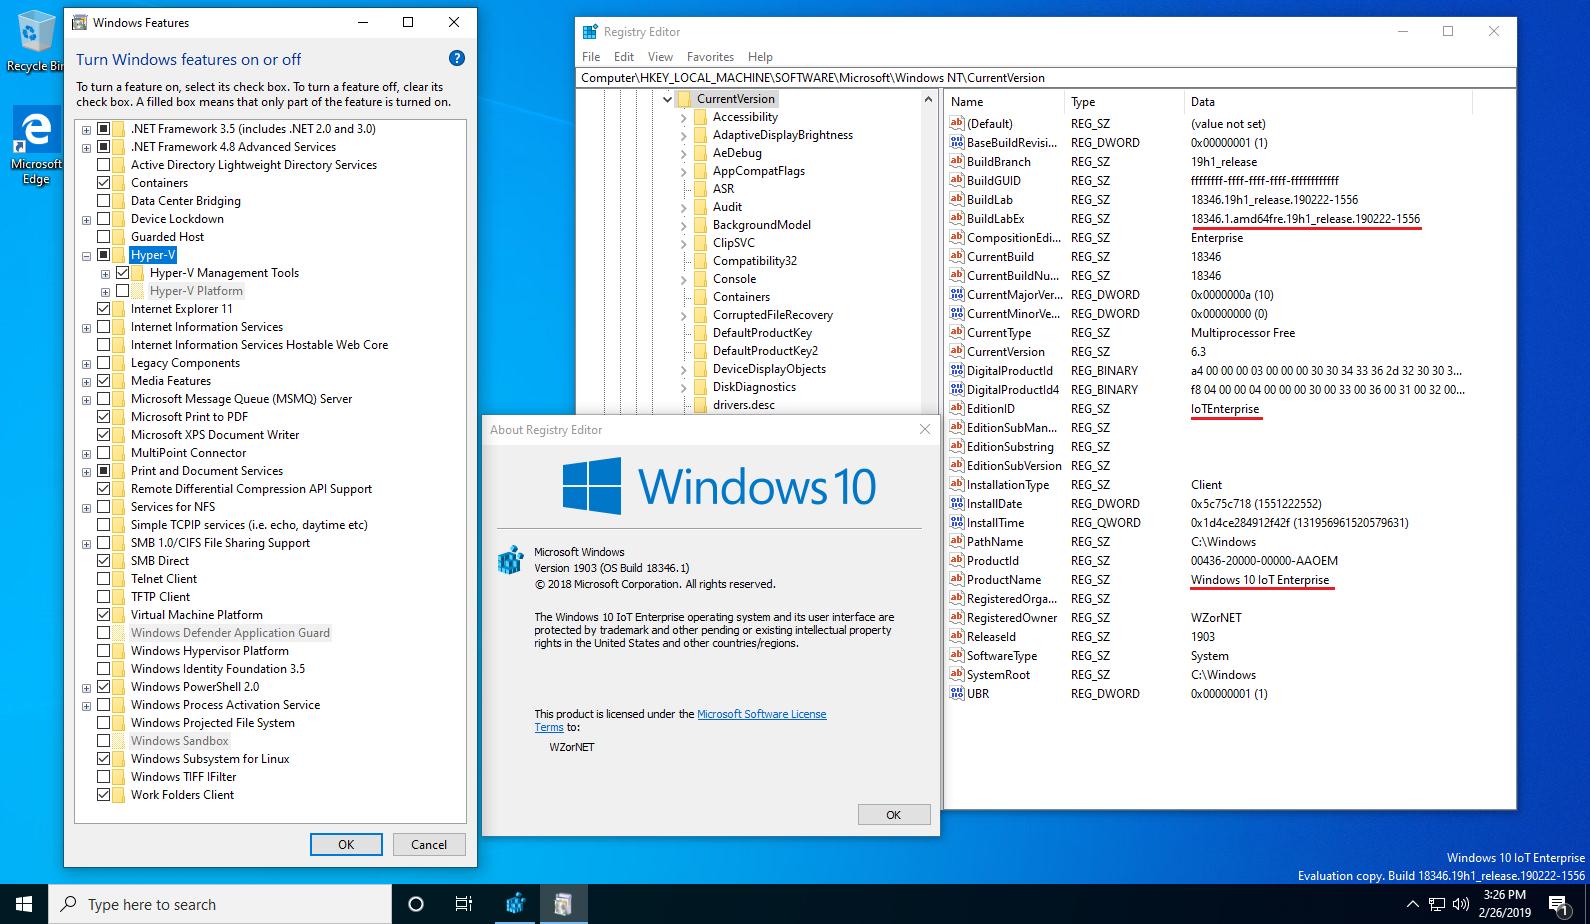 Wzor Windows 10 Iot Enterprise Version 1903 19h1 Wip Build 146 1 19h1 Release 1556 Oem Dm Channel Gvlk Volume Windows 10 Enterprise Ltsc 19 M7xtq Fn8p6 Ttkyv 9d4cc J462d Key Not Acceptable Previously